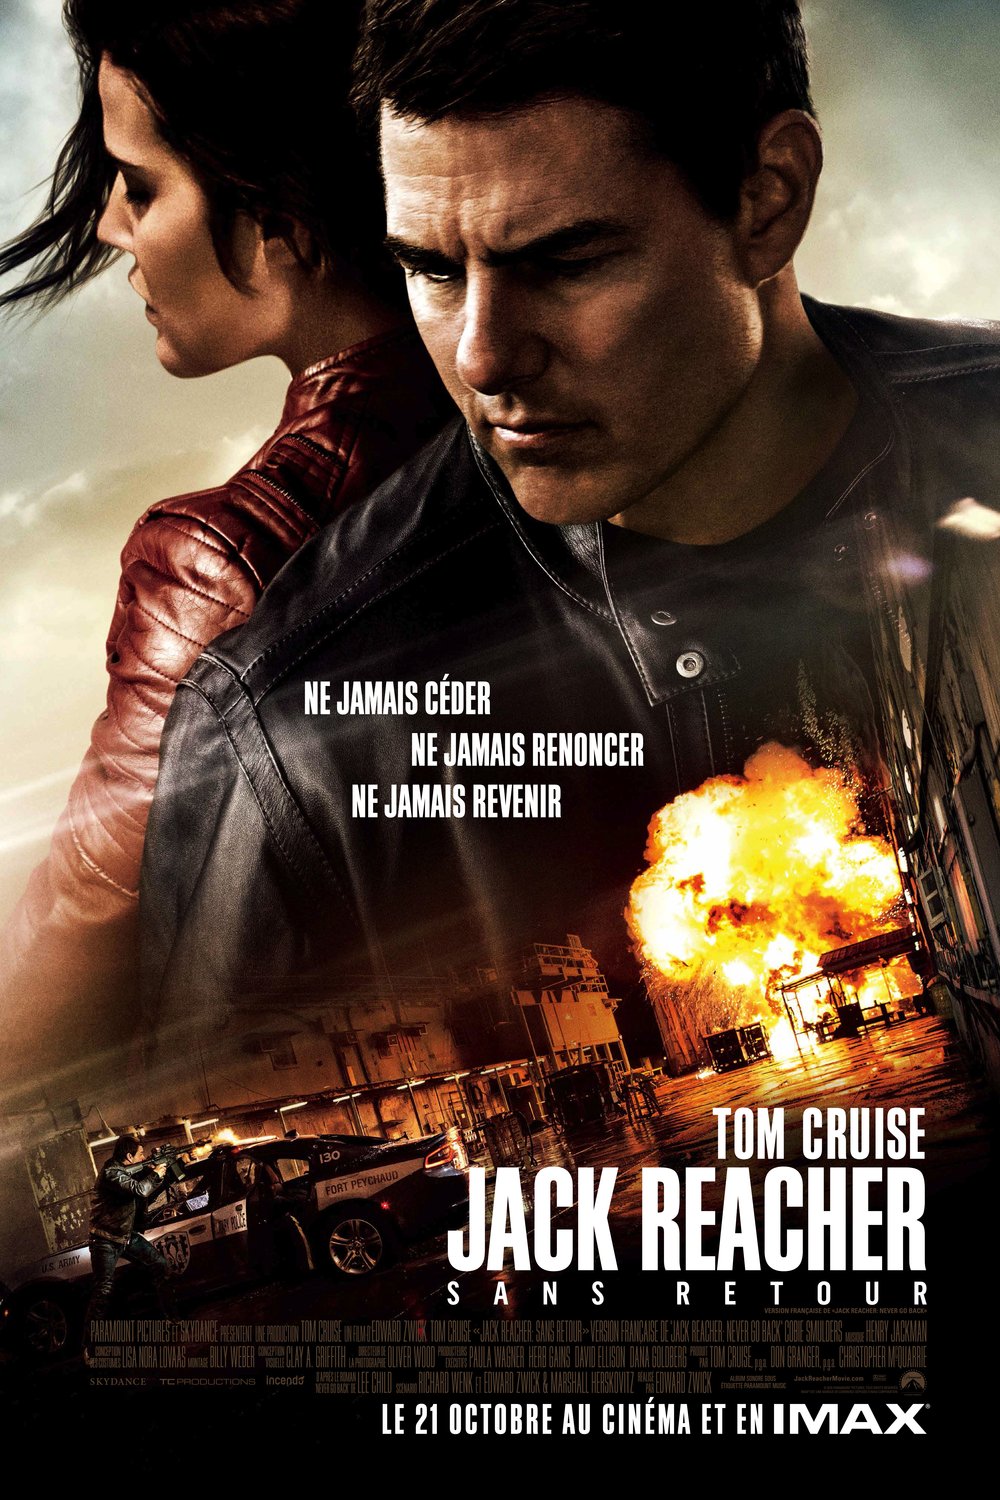 Poster of the movie Jack Reacher: Sans retour